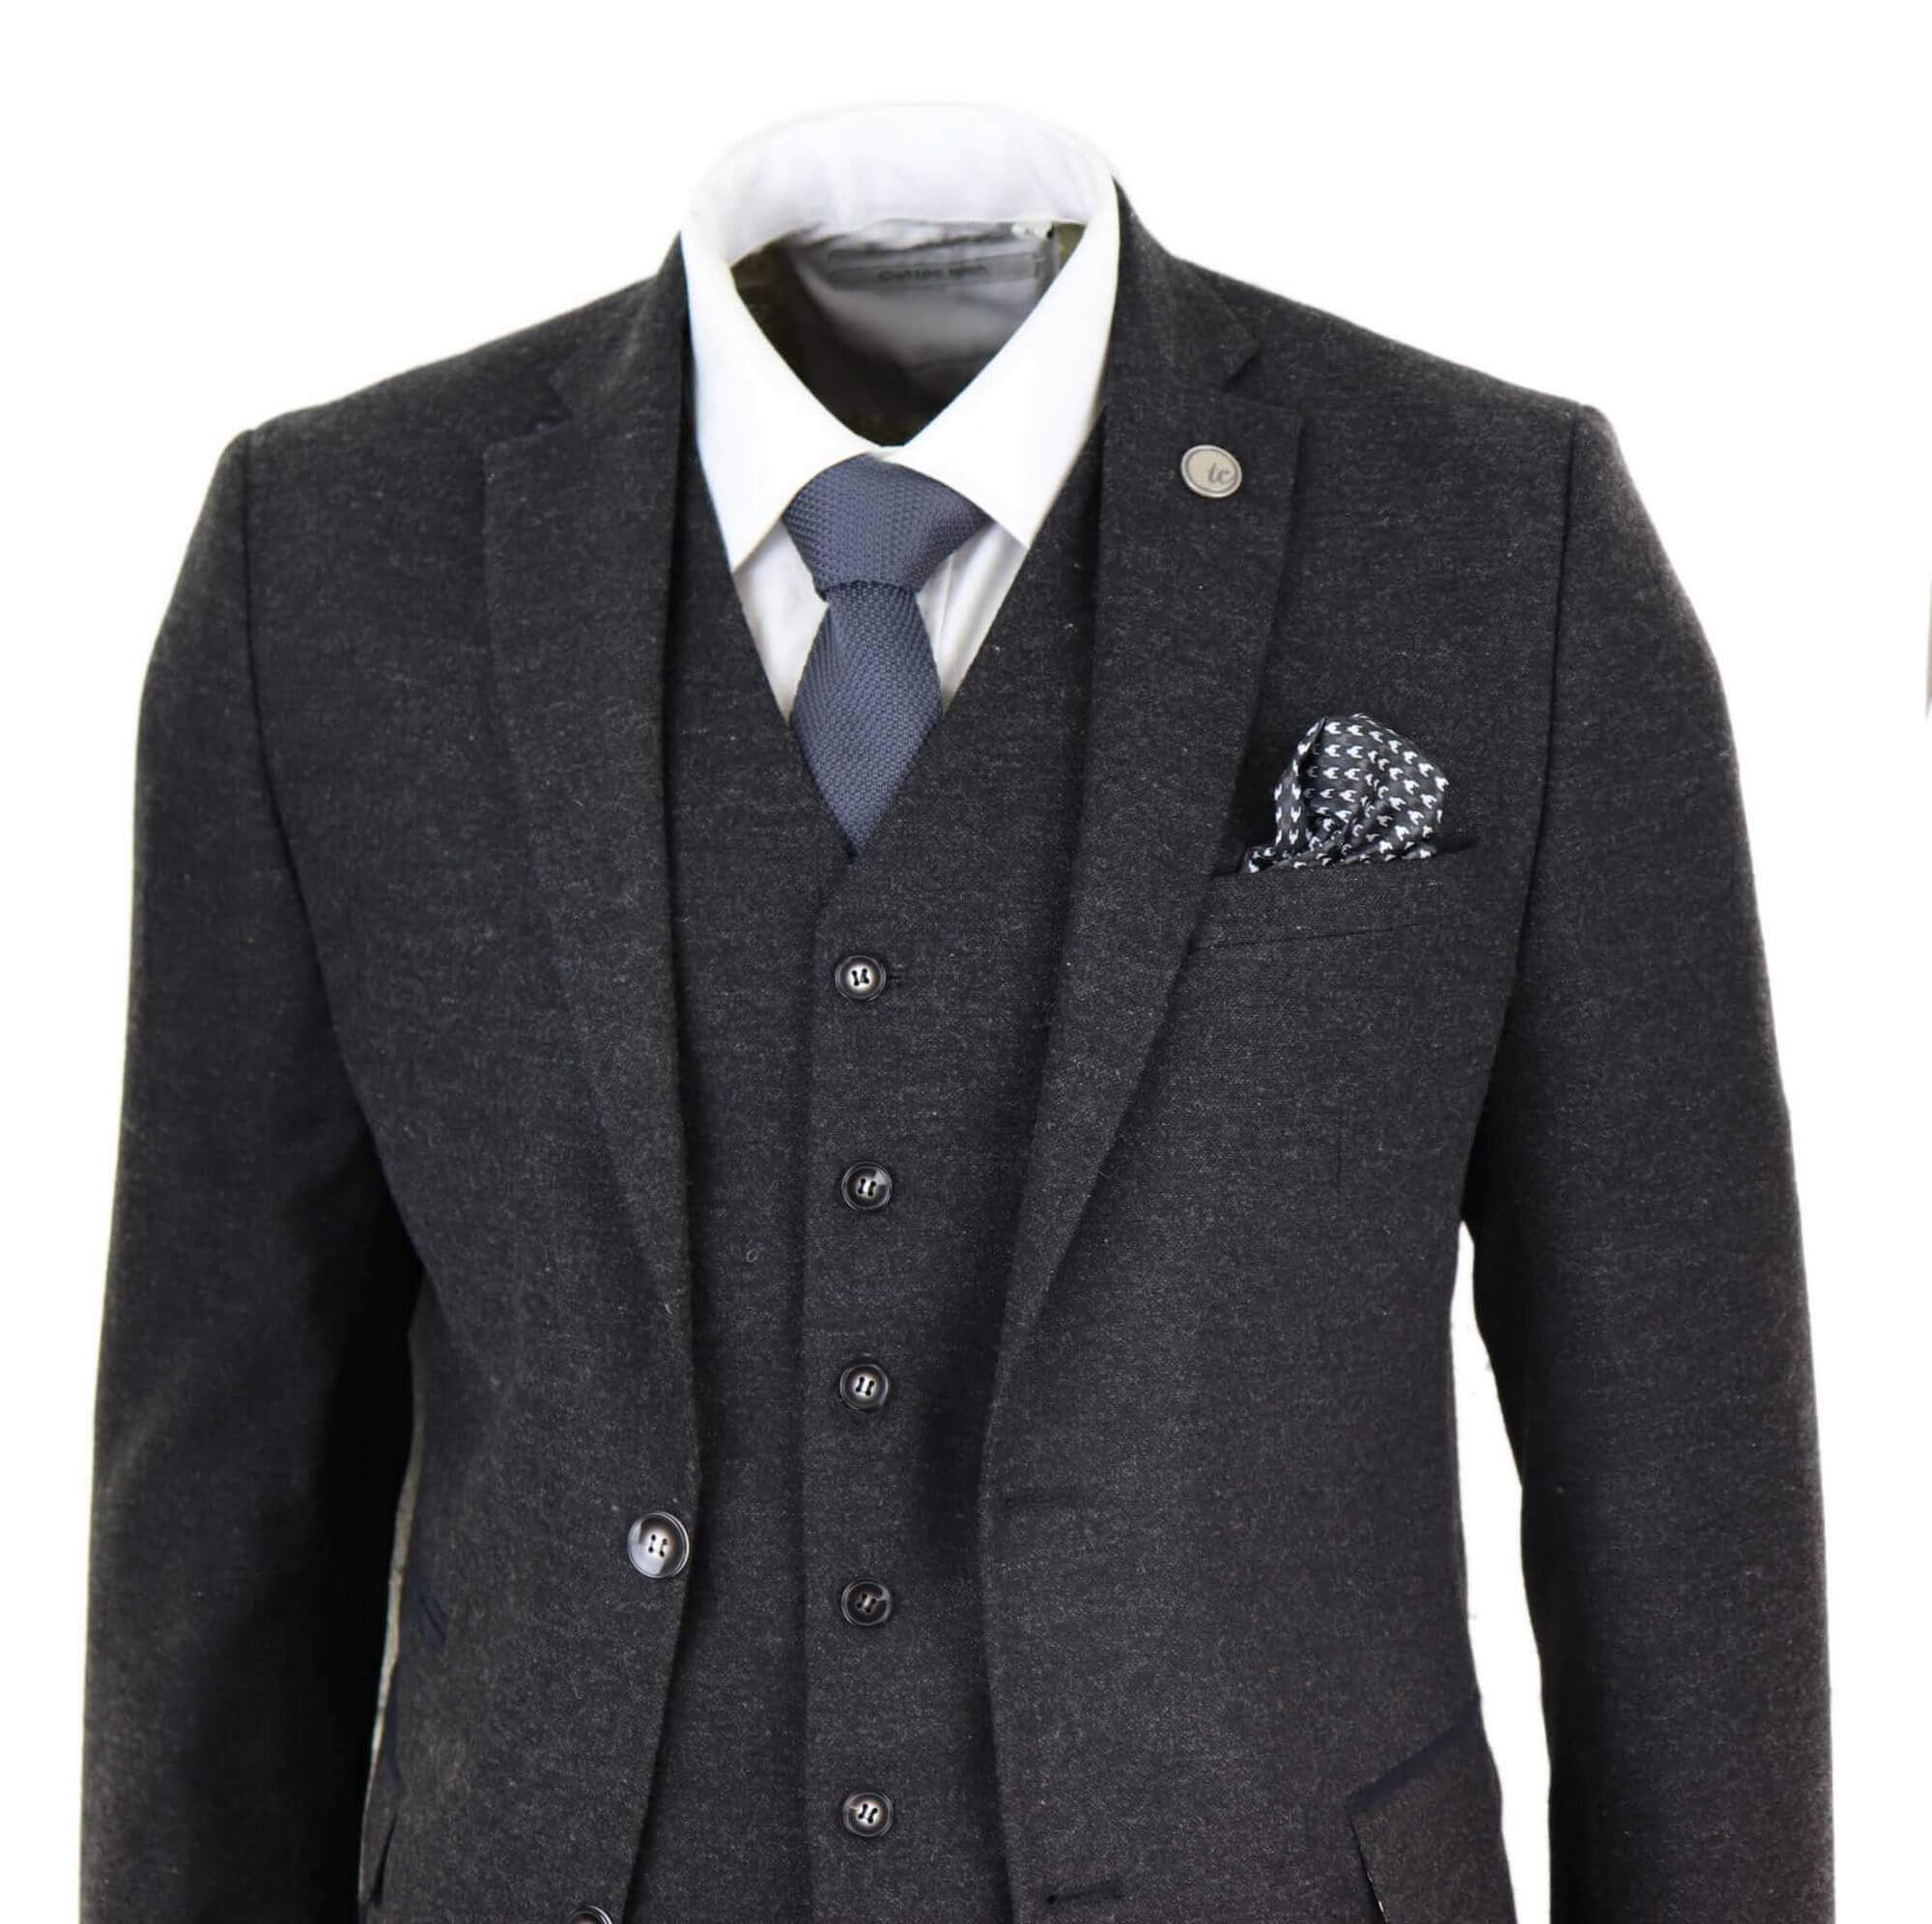 Mens Black Vintage 1920s Suit: Buy Online - Happy Gentleman